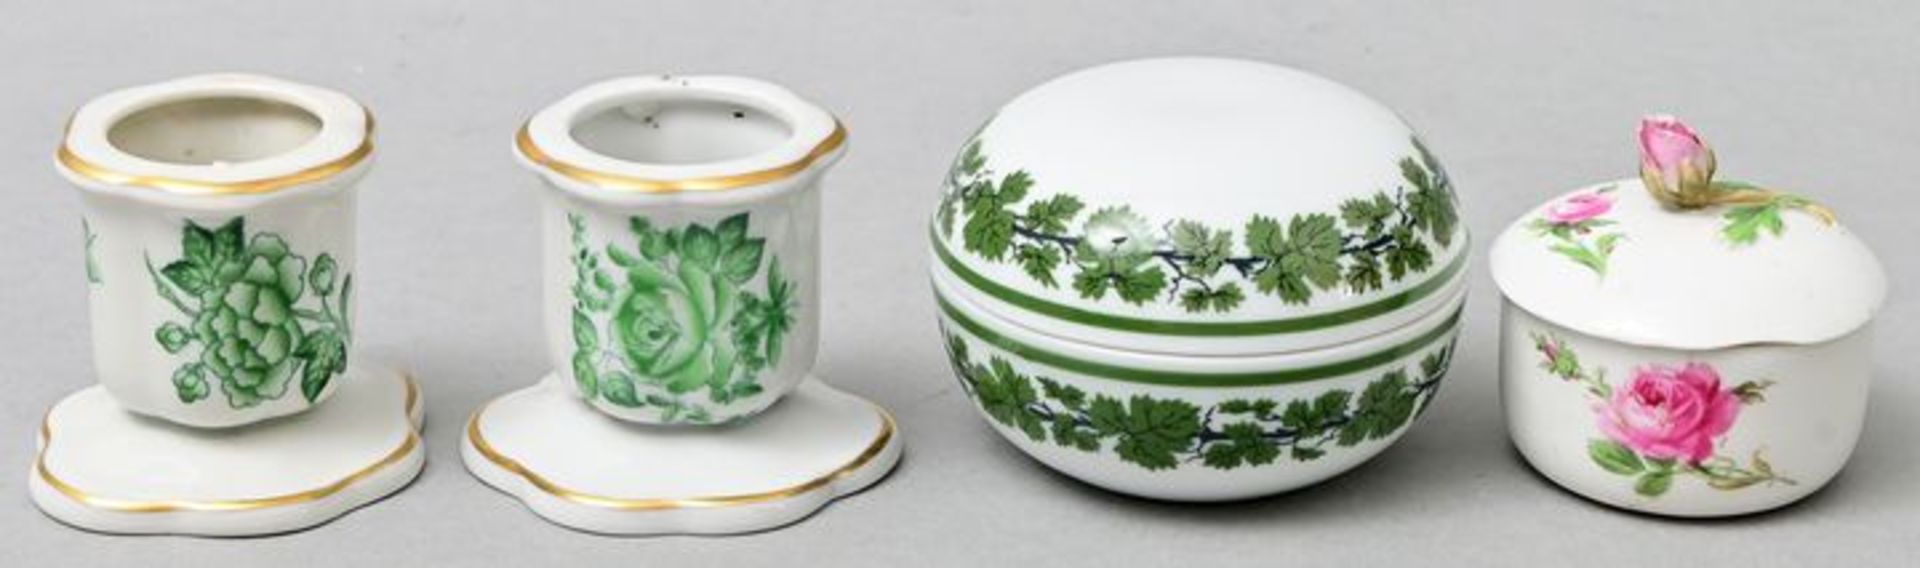 Vier Kleinteile Meissen/ Herend/ porcelain items